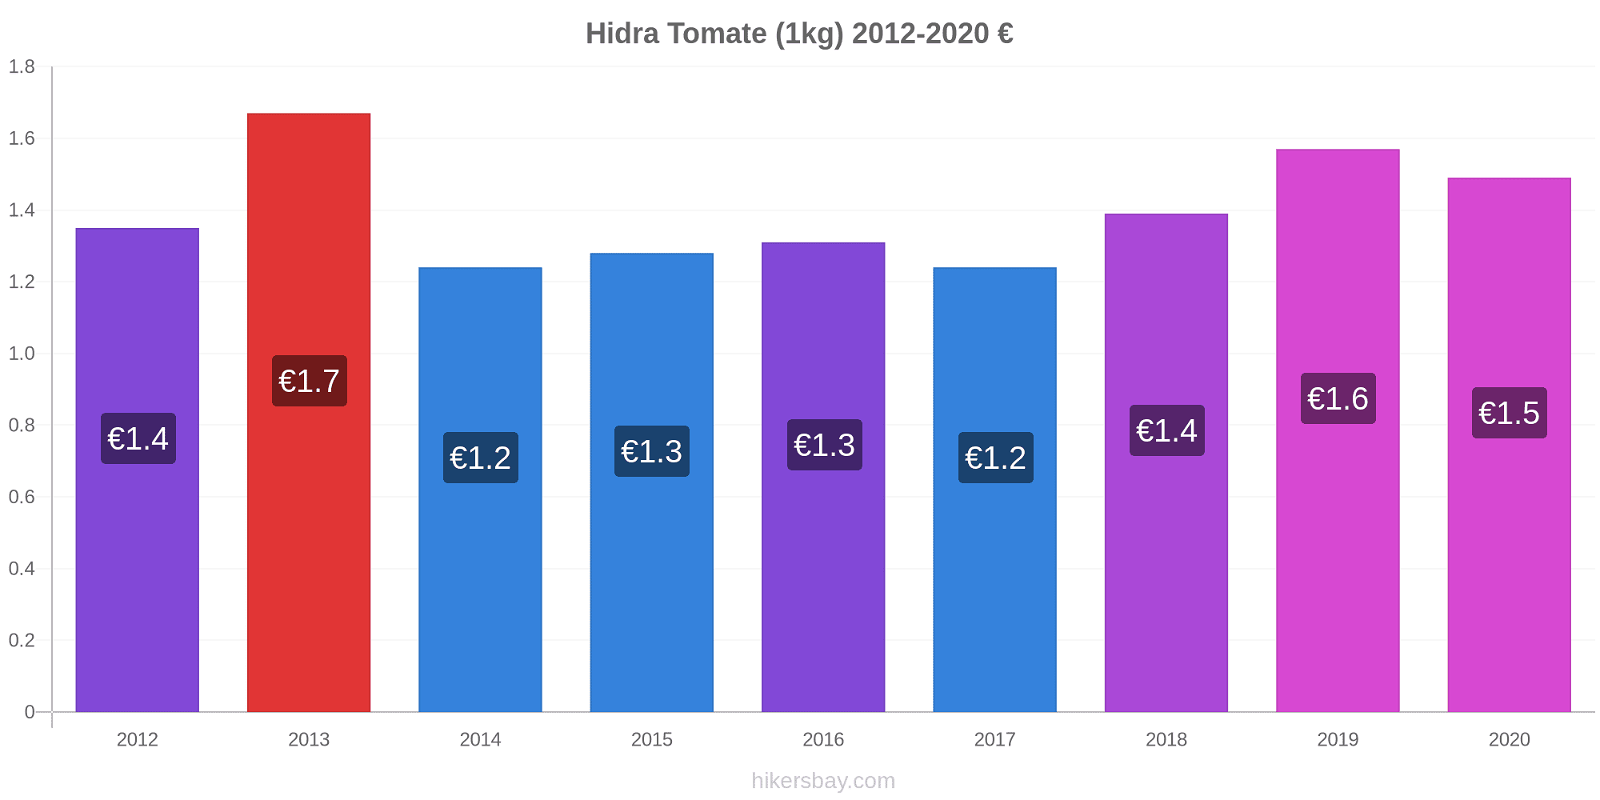 Hidra variação de preço Tomate (1kg) hikersbay.com